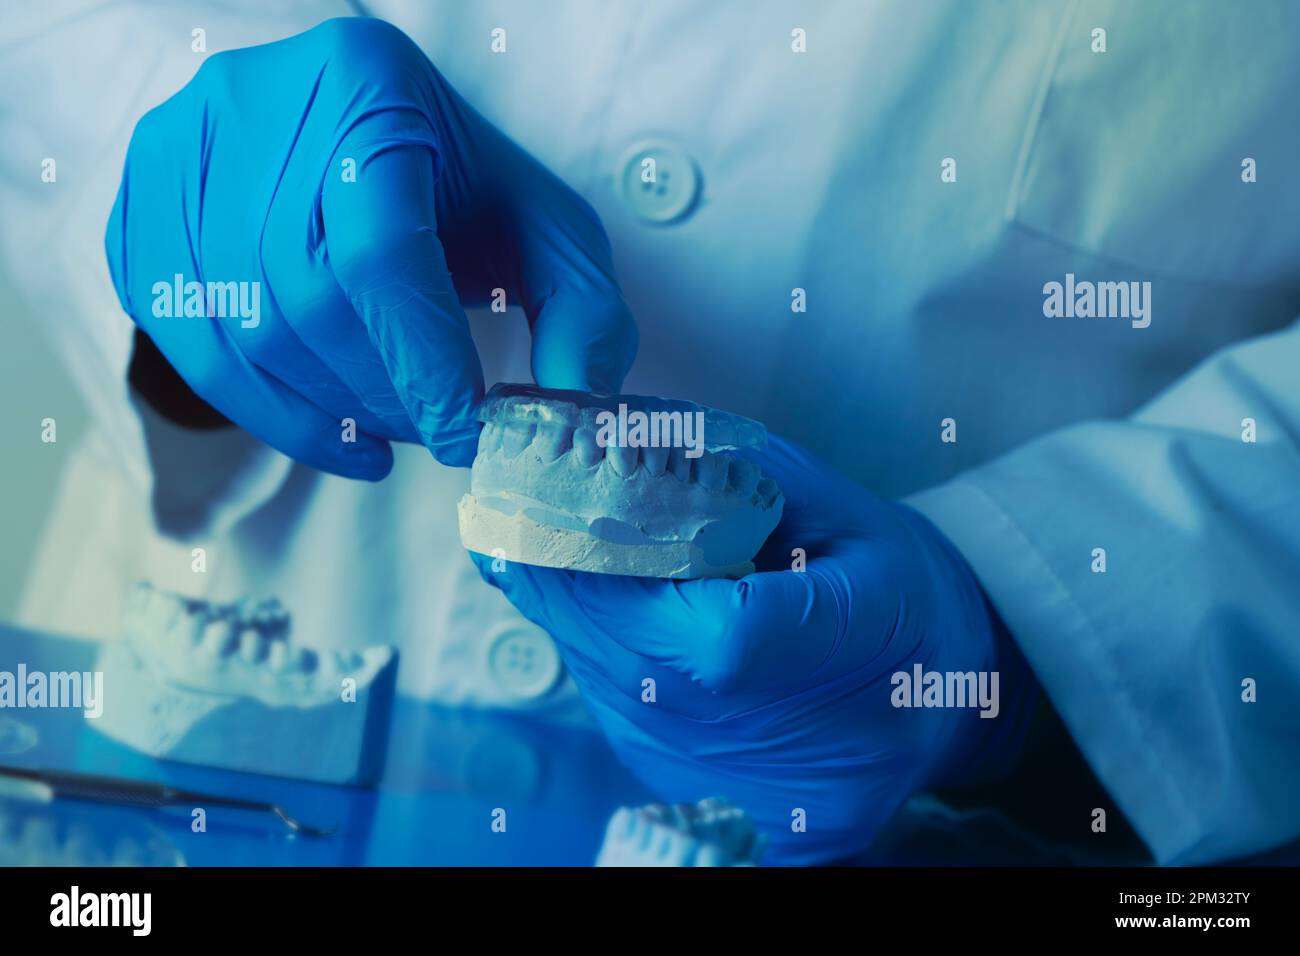 primo piano di un dentista, indossando guanti in lattice blu, testando una stecca occlusale nella sua muffa dentale Foto Stock